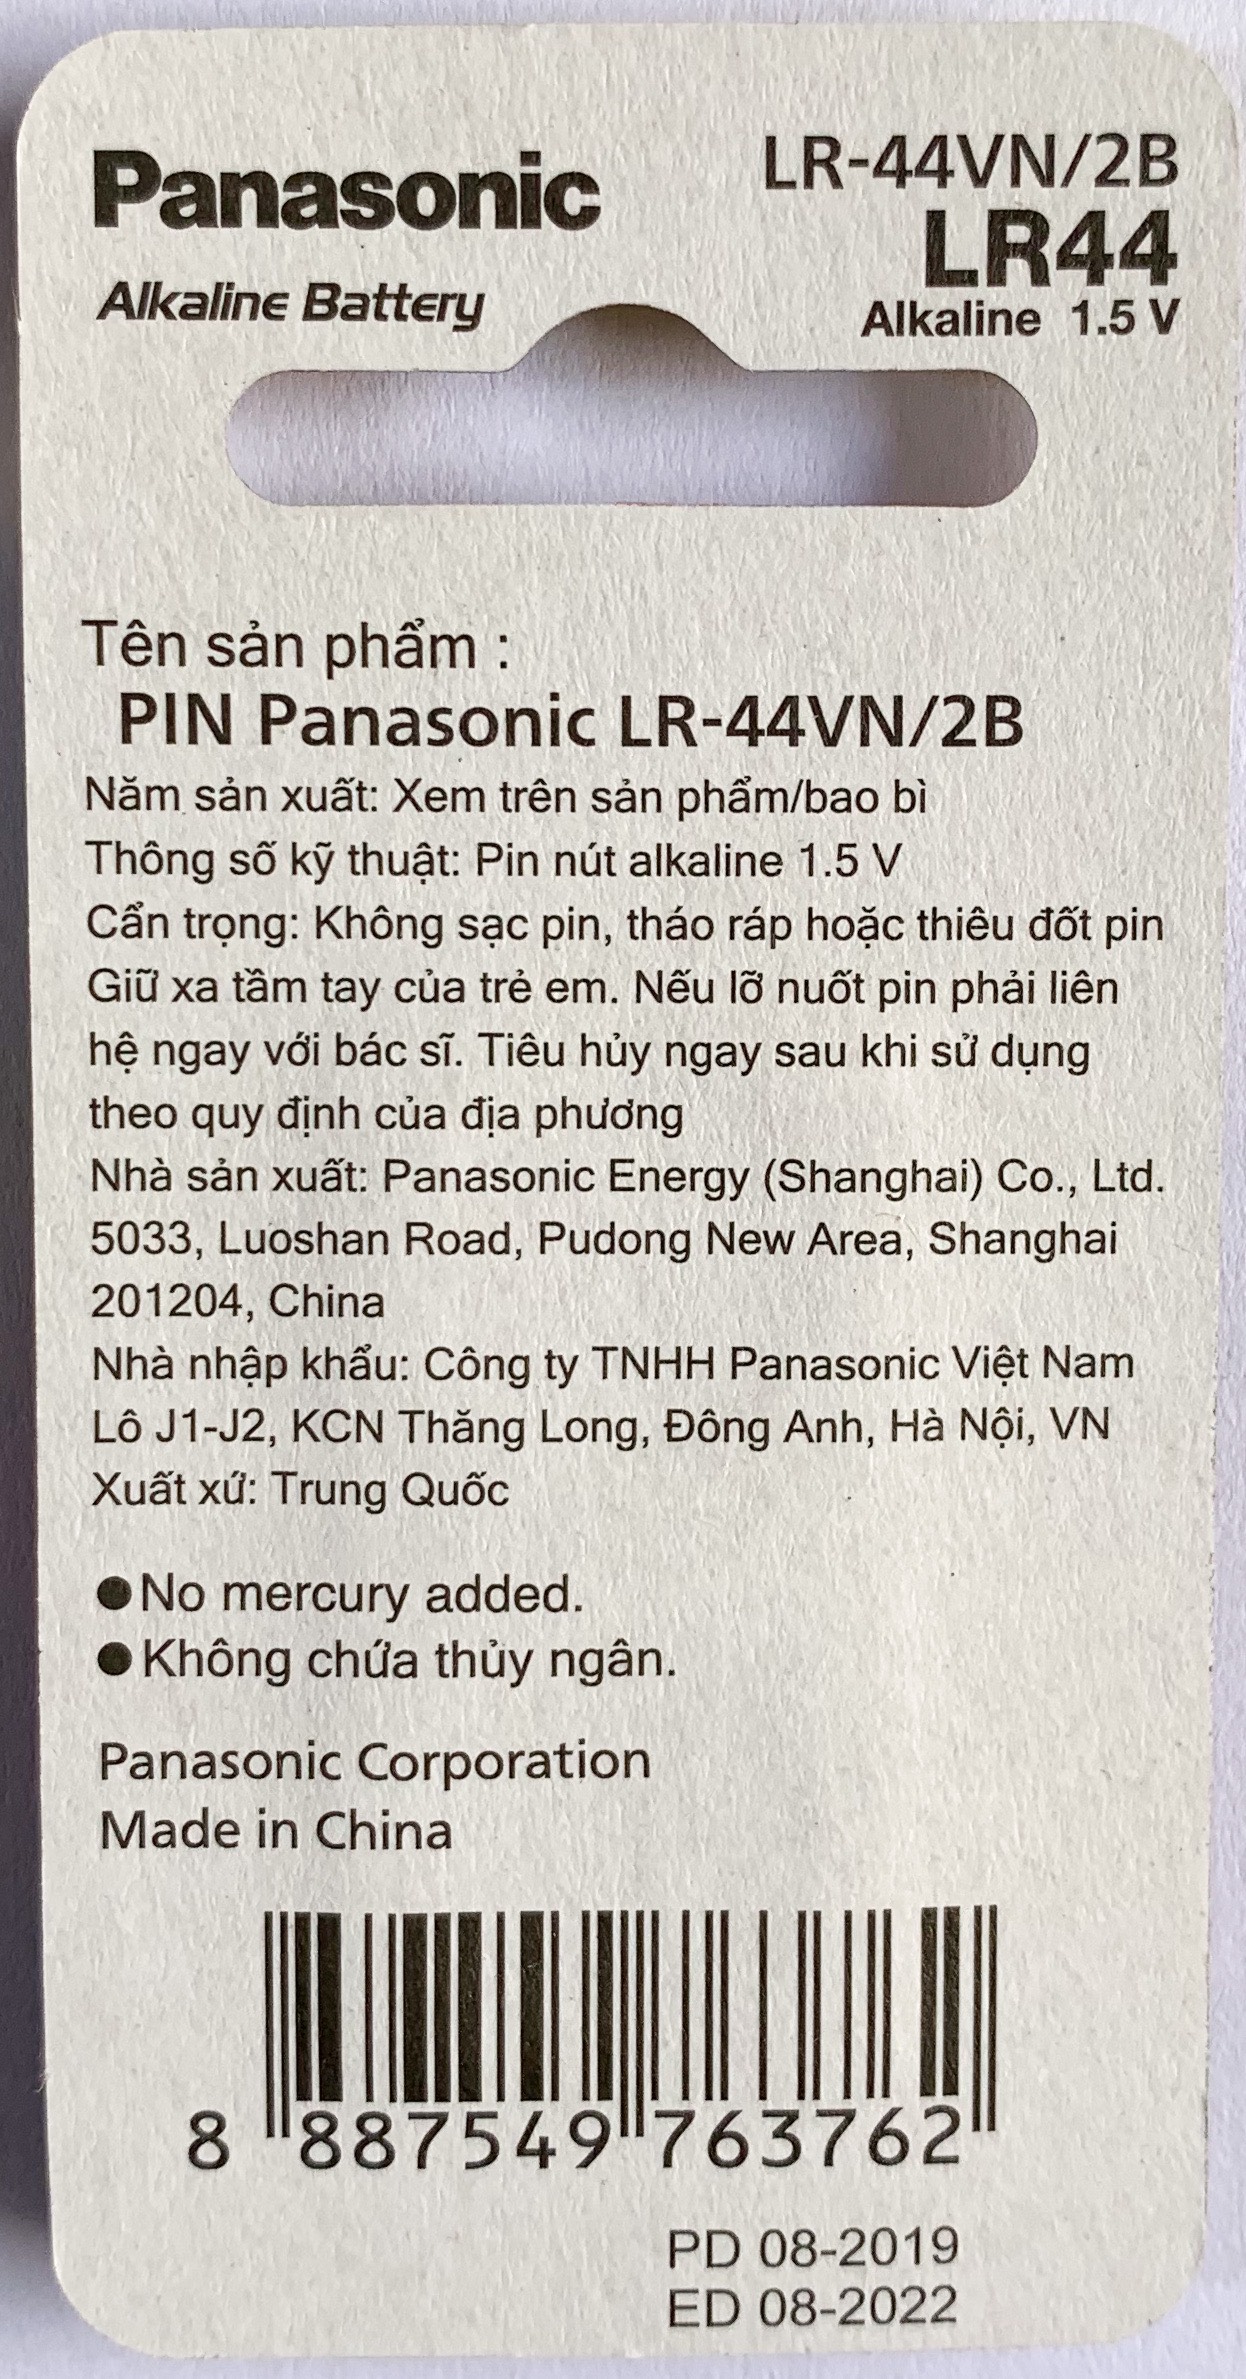 2 Vỉ Pin LR44/2B Panasonic 1,5 V - Hàng Chính Hãng